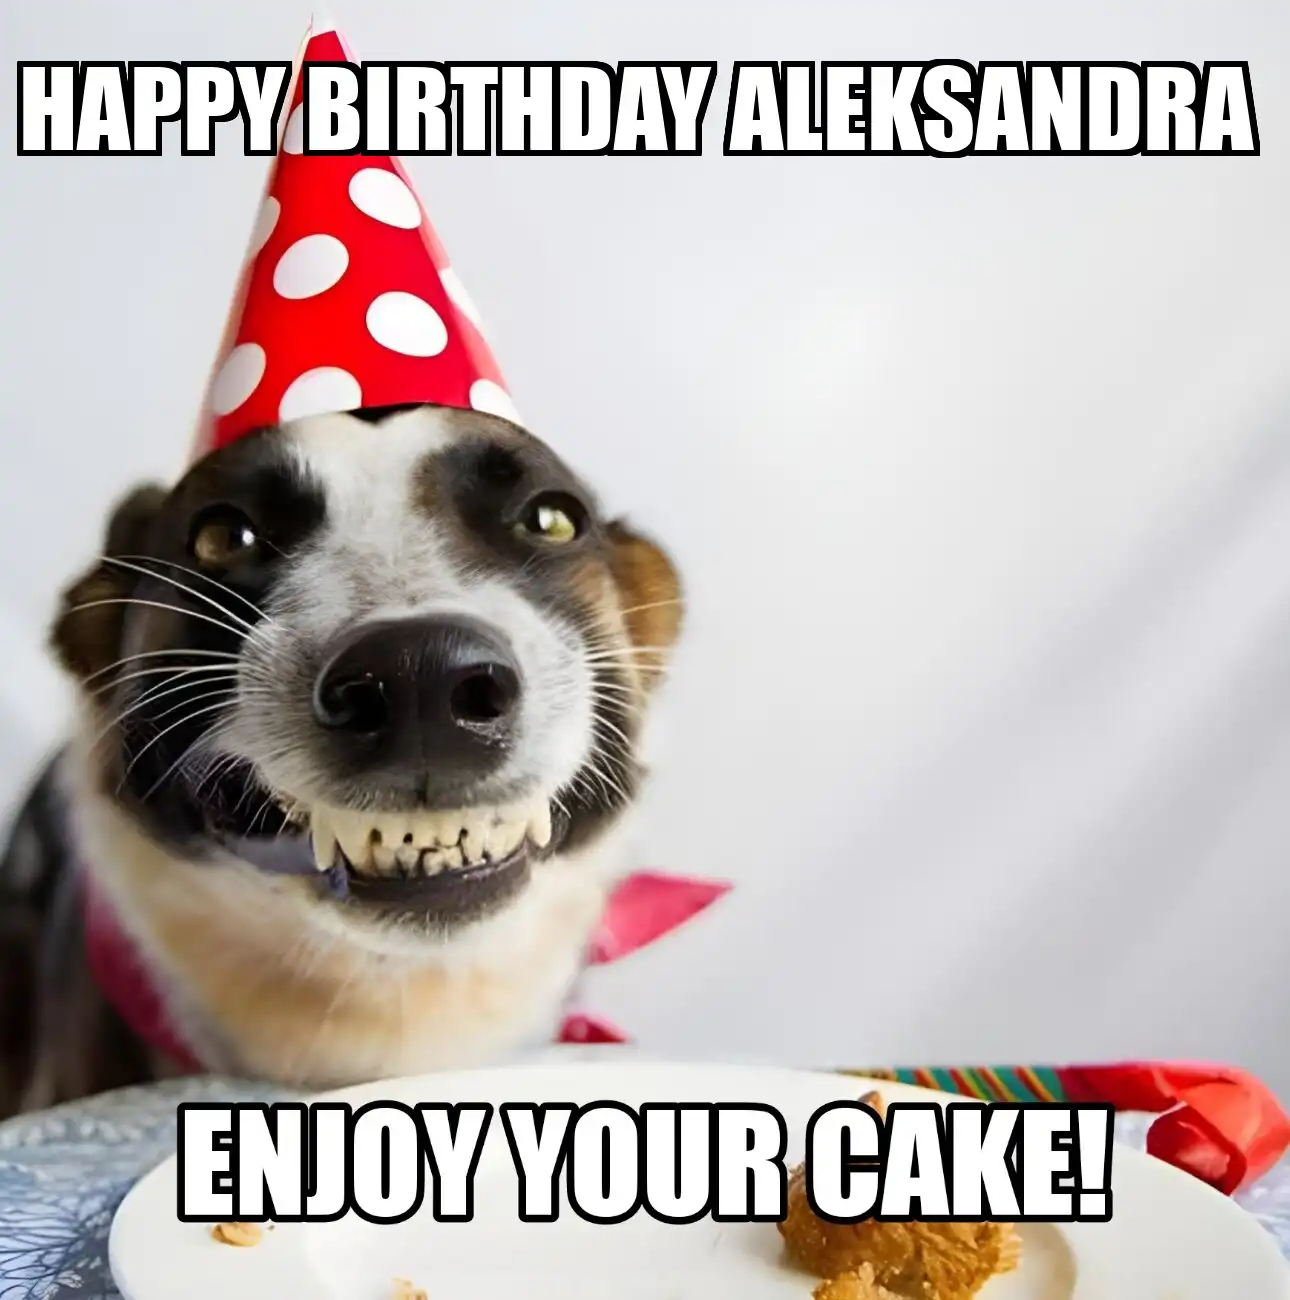 Happy Birthday Aleksandra Enjoy Your Cake Dog Meme